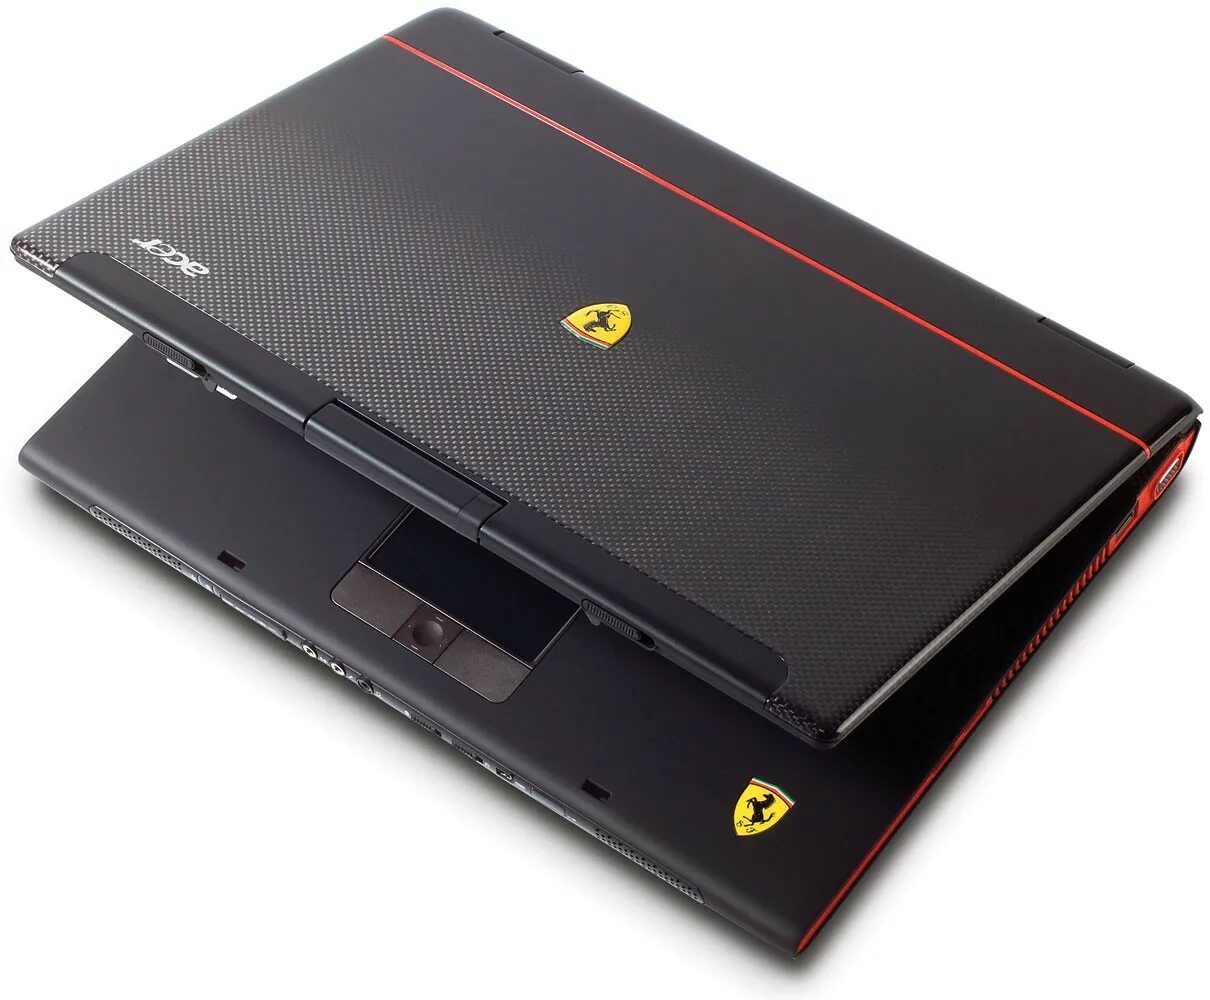 Acer ferrari. Acer Ferrari one 200-314g50n. Acer Ferrari 5000. Acer Ferrari 4005wlmi. Acer Ferrari 1000.